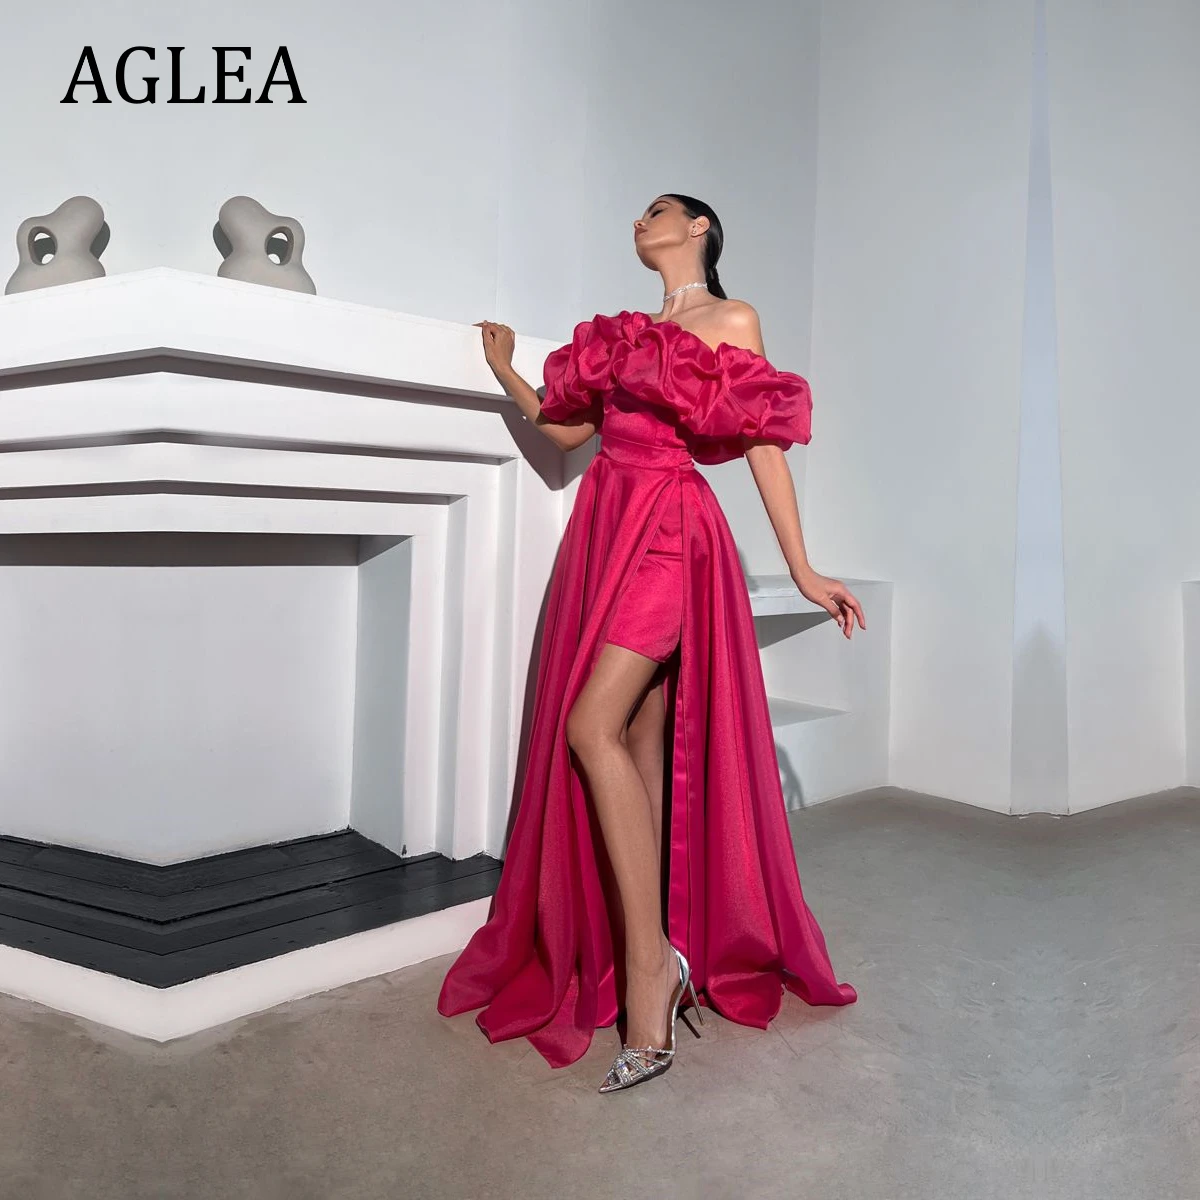 

Женское вечернее платье с драпировкой AGLEA, элегантное Деловое платье в пол с открытыми плечами, трапециевидного силуэта, красного цвета, для выпускного вечера